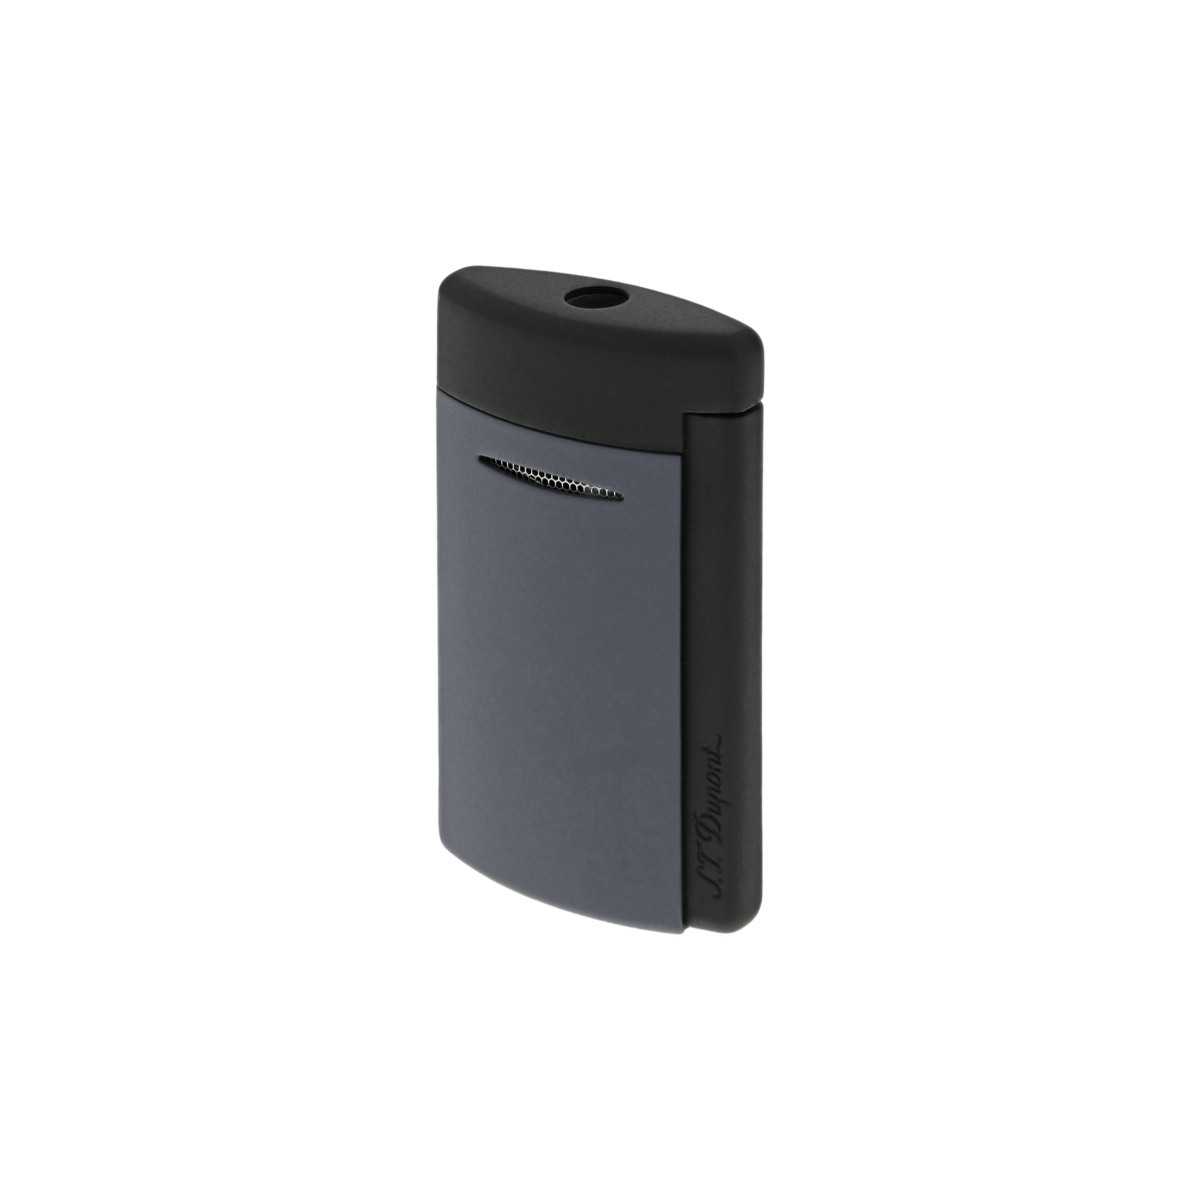 Зажигалка Minijet 10866 Цвет Серый Матовый современный лак | S.T. Dupont